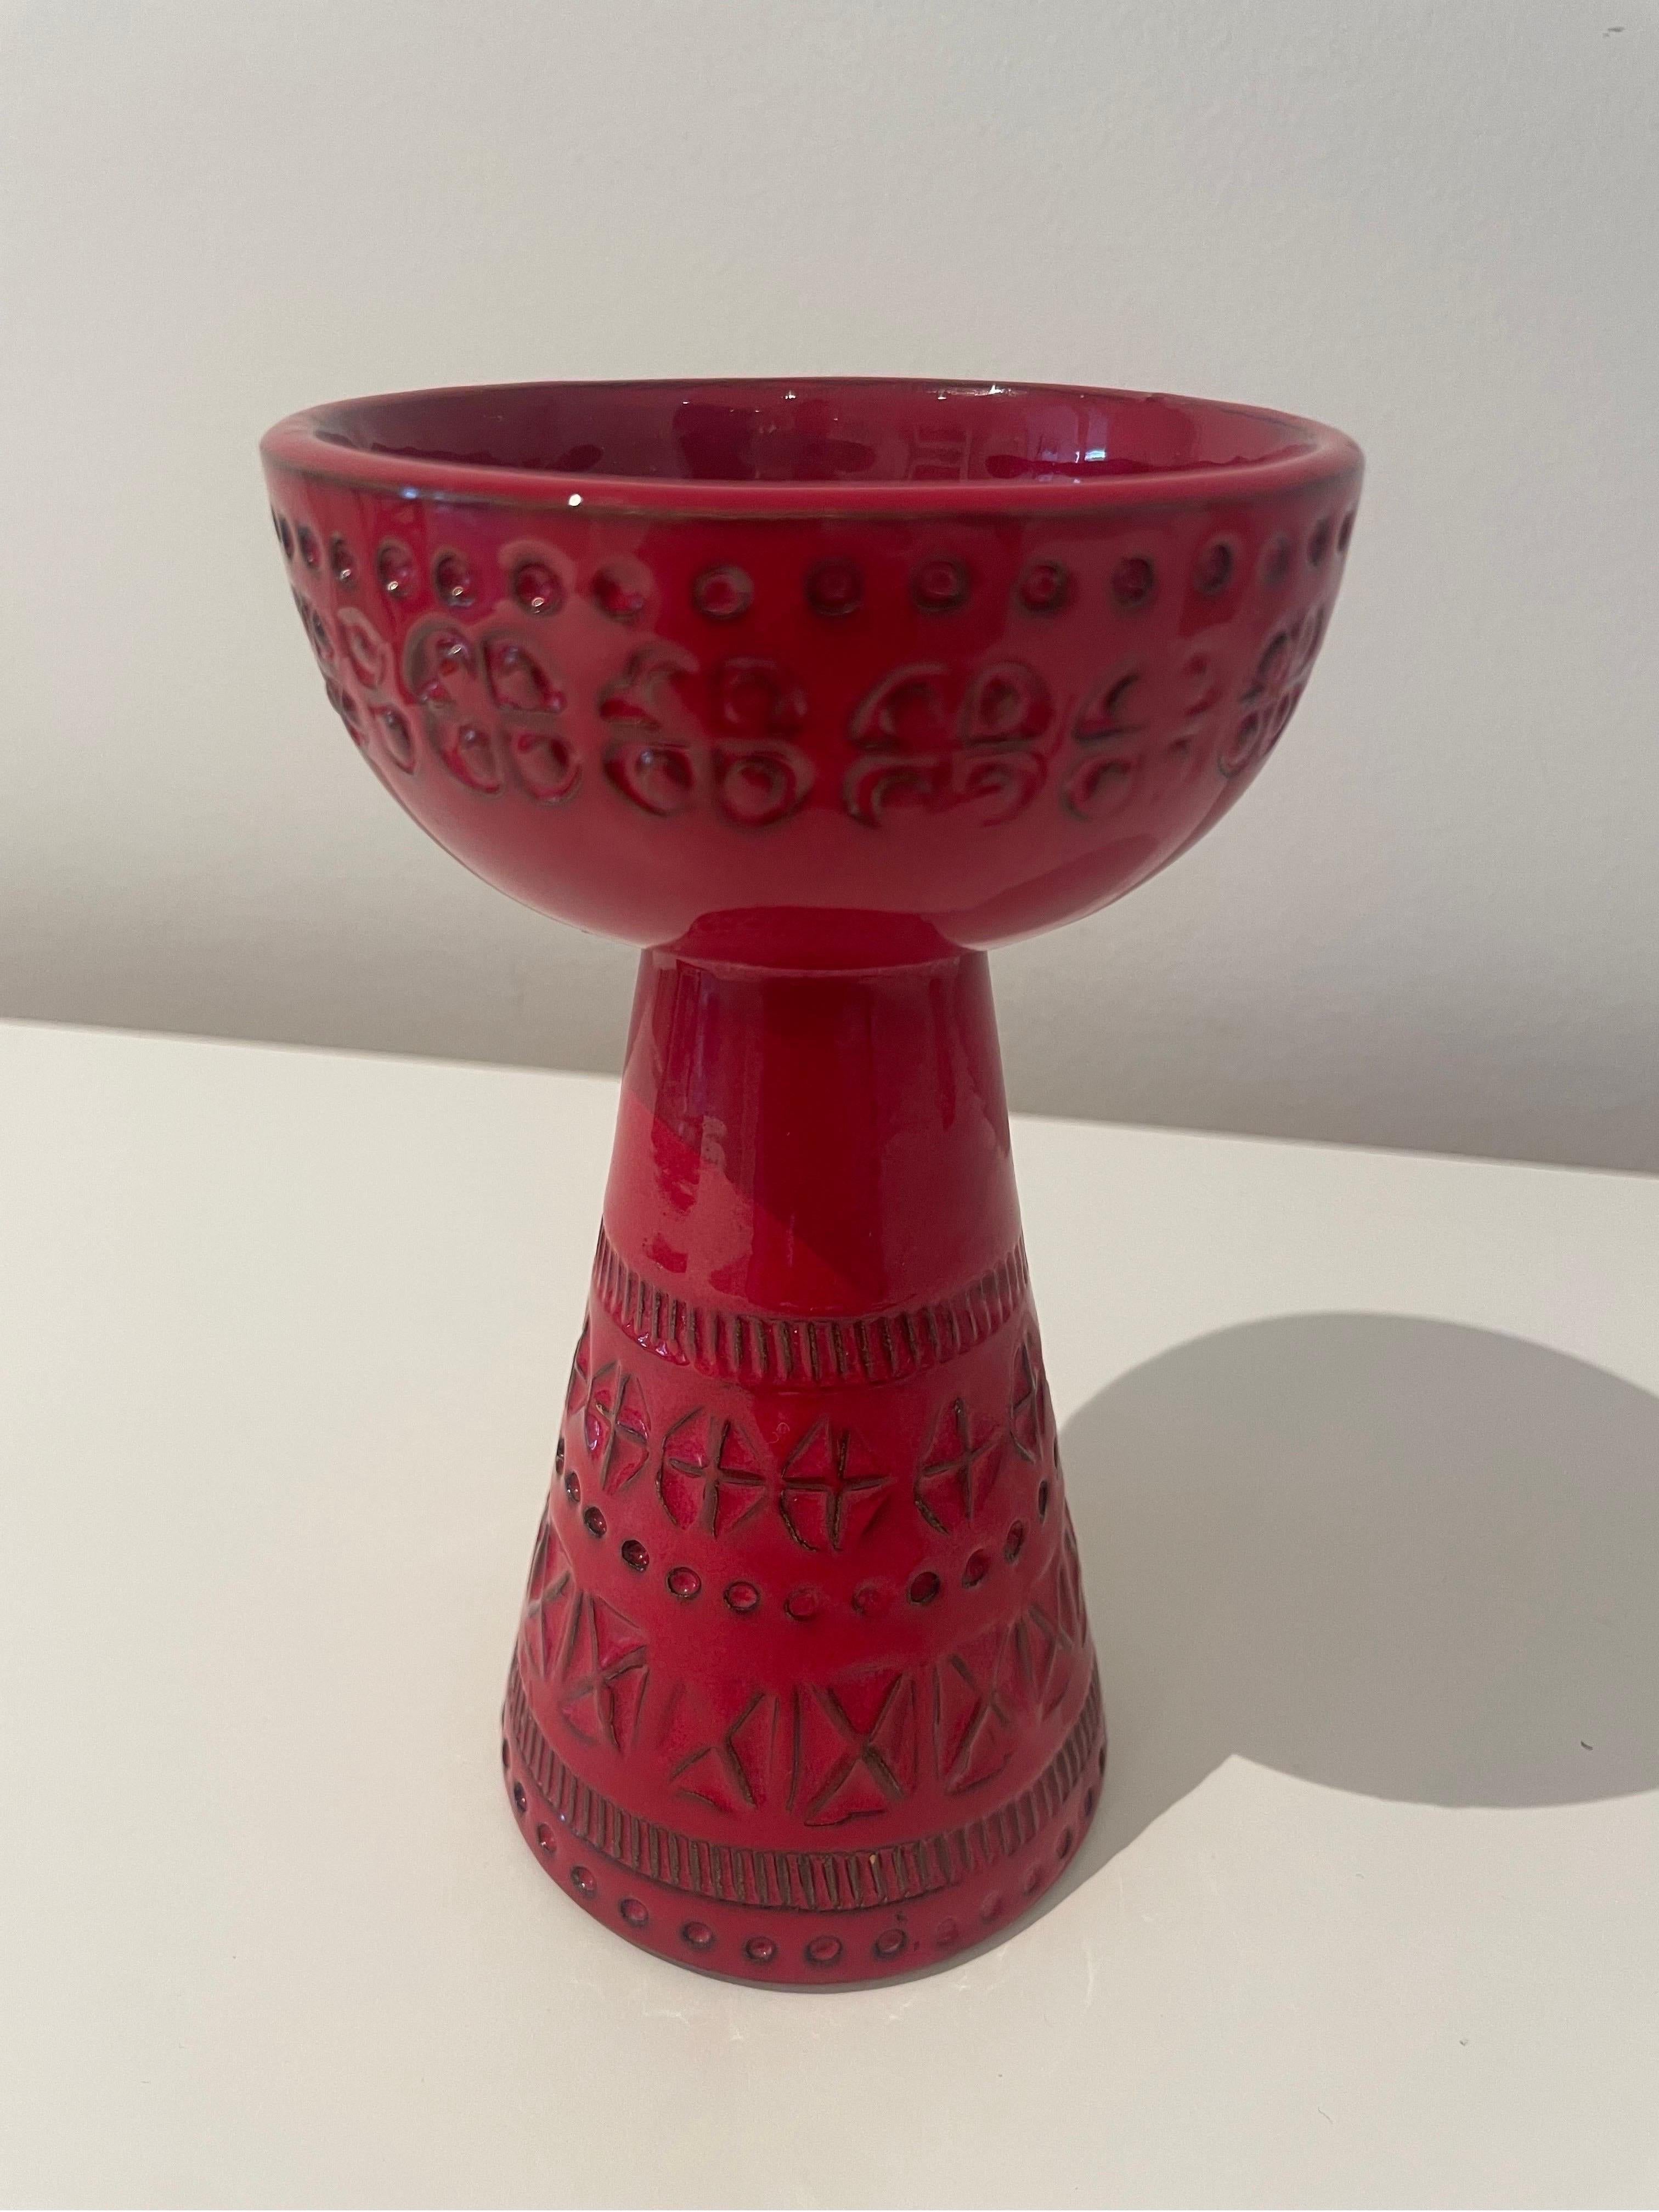 Toller Kerzenhalter/ Vase von Bitossi aus Keramik. Schöne rote Glasurfarbe mit mehreren Glasurschichten in verschiedenen Tönen und handgeschnitzten Mustern, die eine schöne unregelmäßige Struktur erzeugen